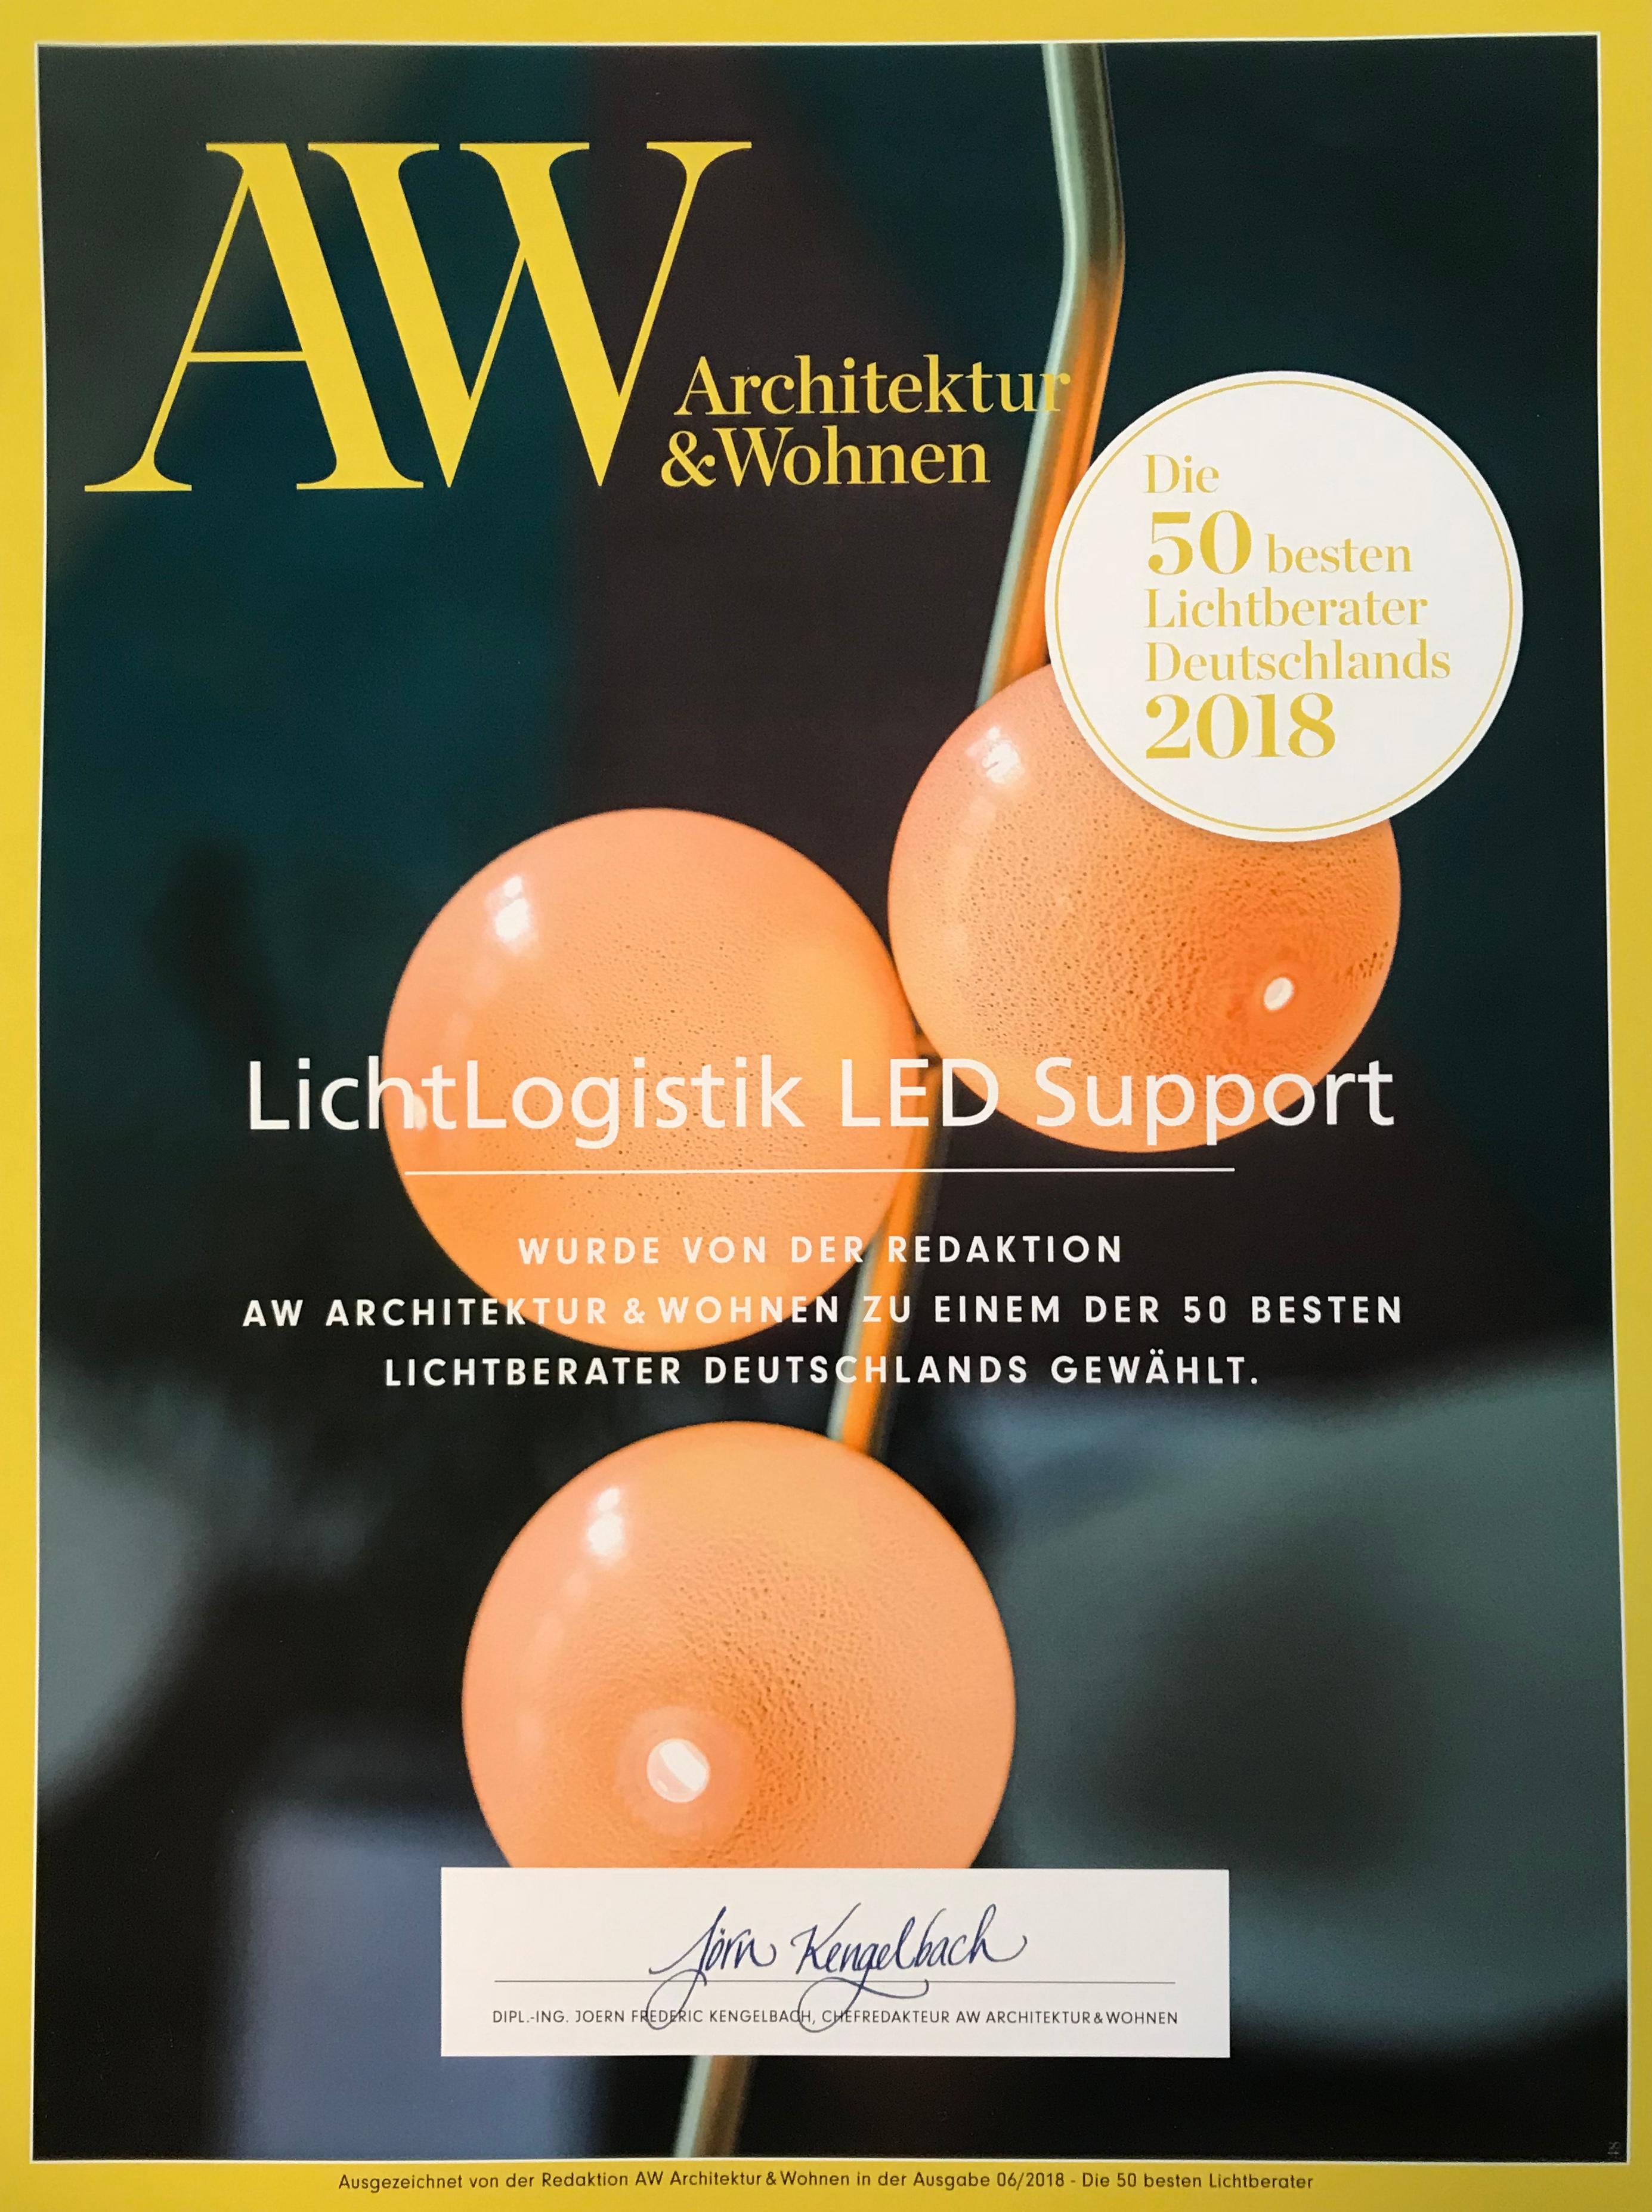 Bilder LichtLogistik LED Support GmbH